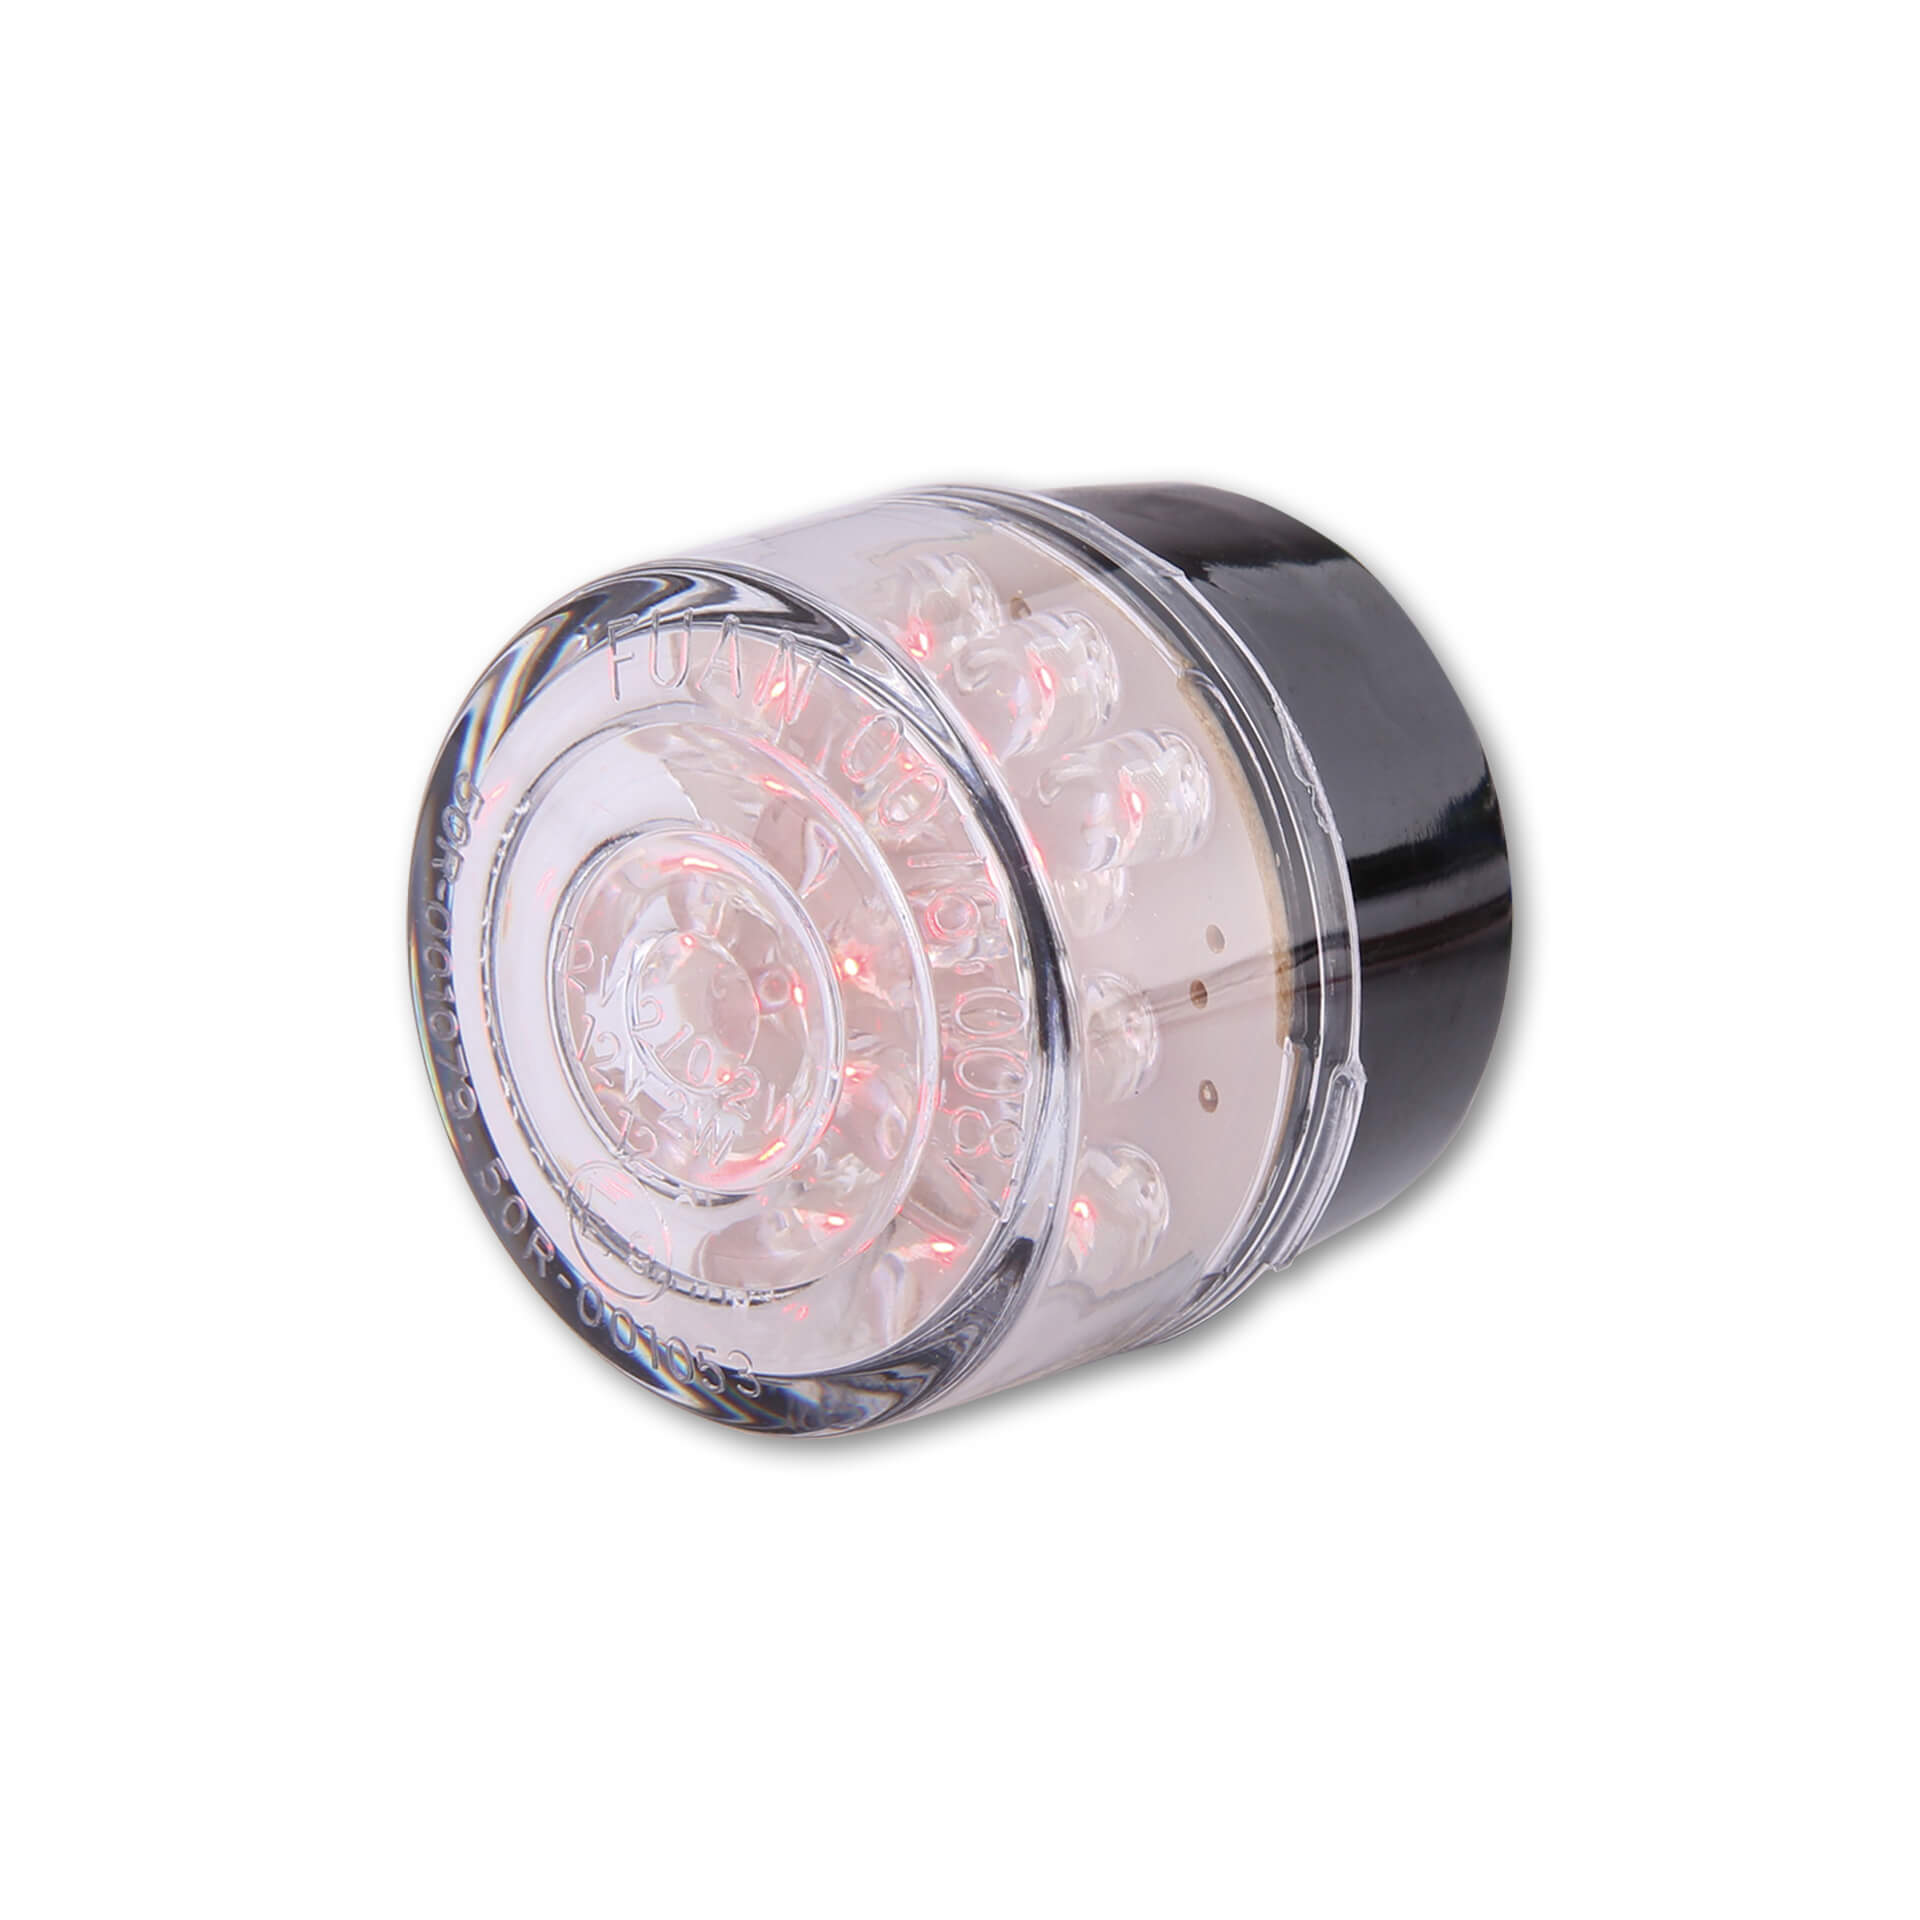 shin_yo Insert LED mini taillight BULLET, round, transparent glass